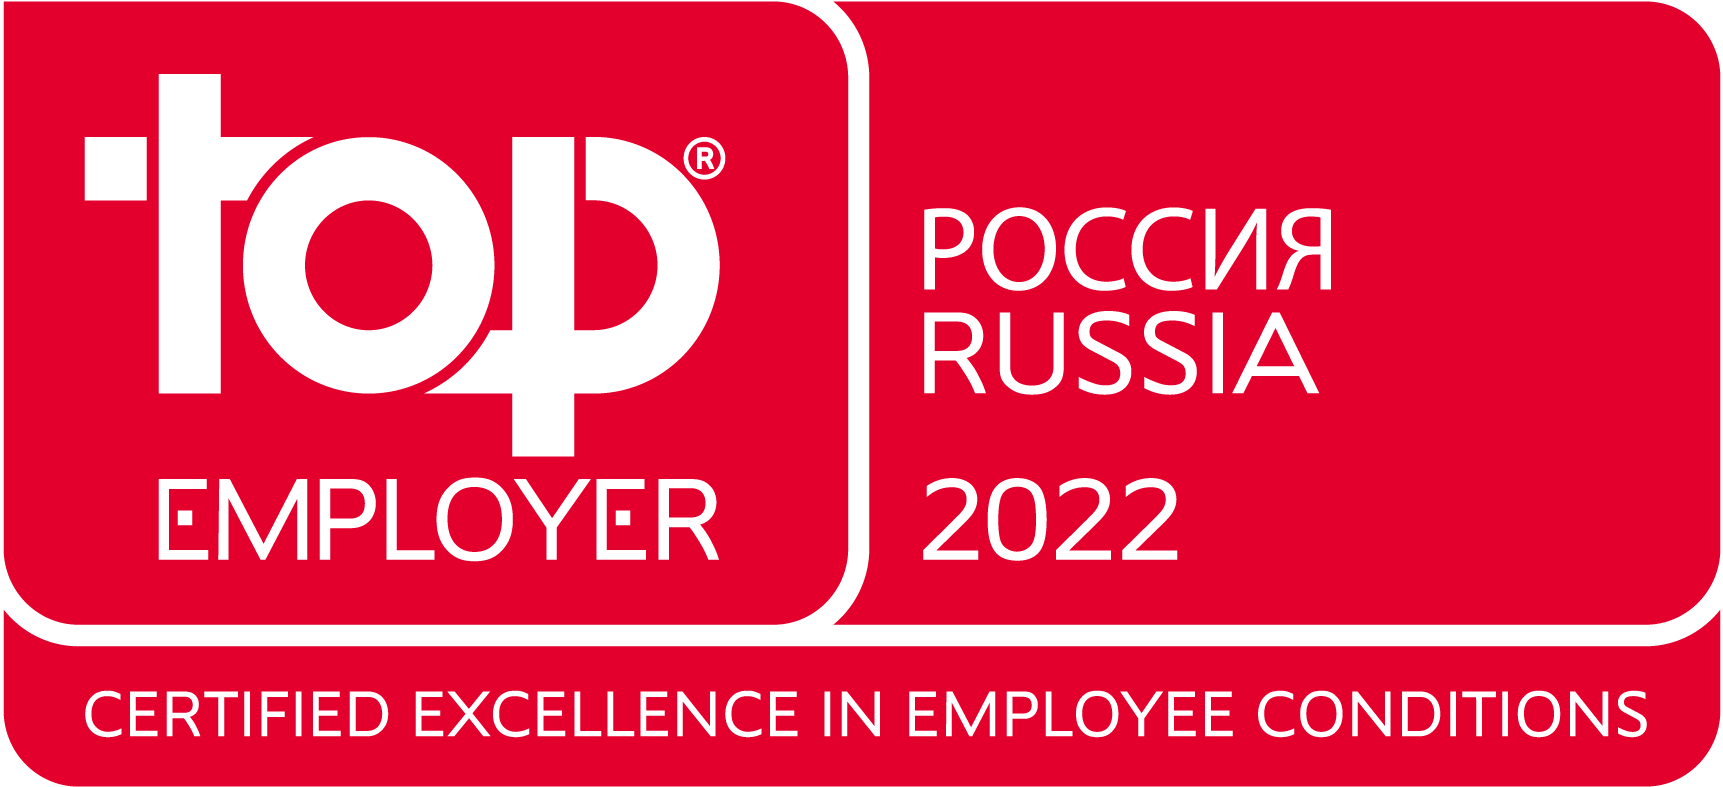 АстраЗенека Россия четвертый год подряд признана лучшим работодателем по версии Top Employers Institute